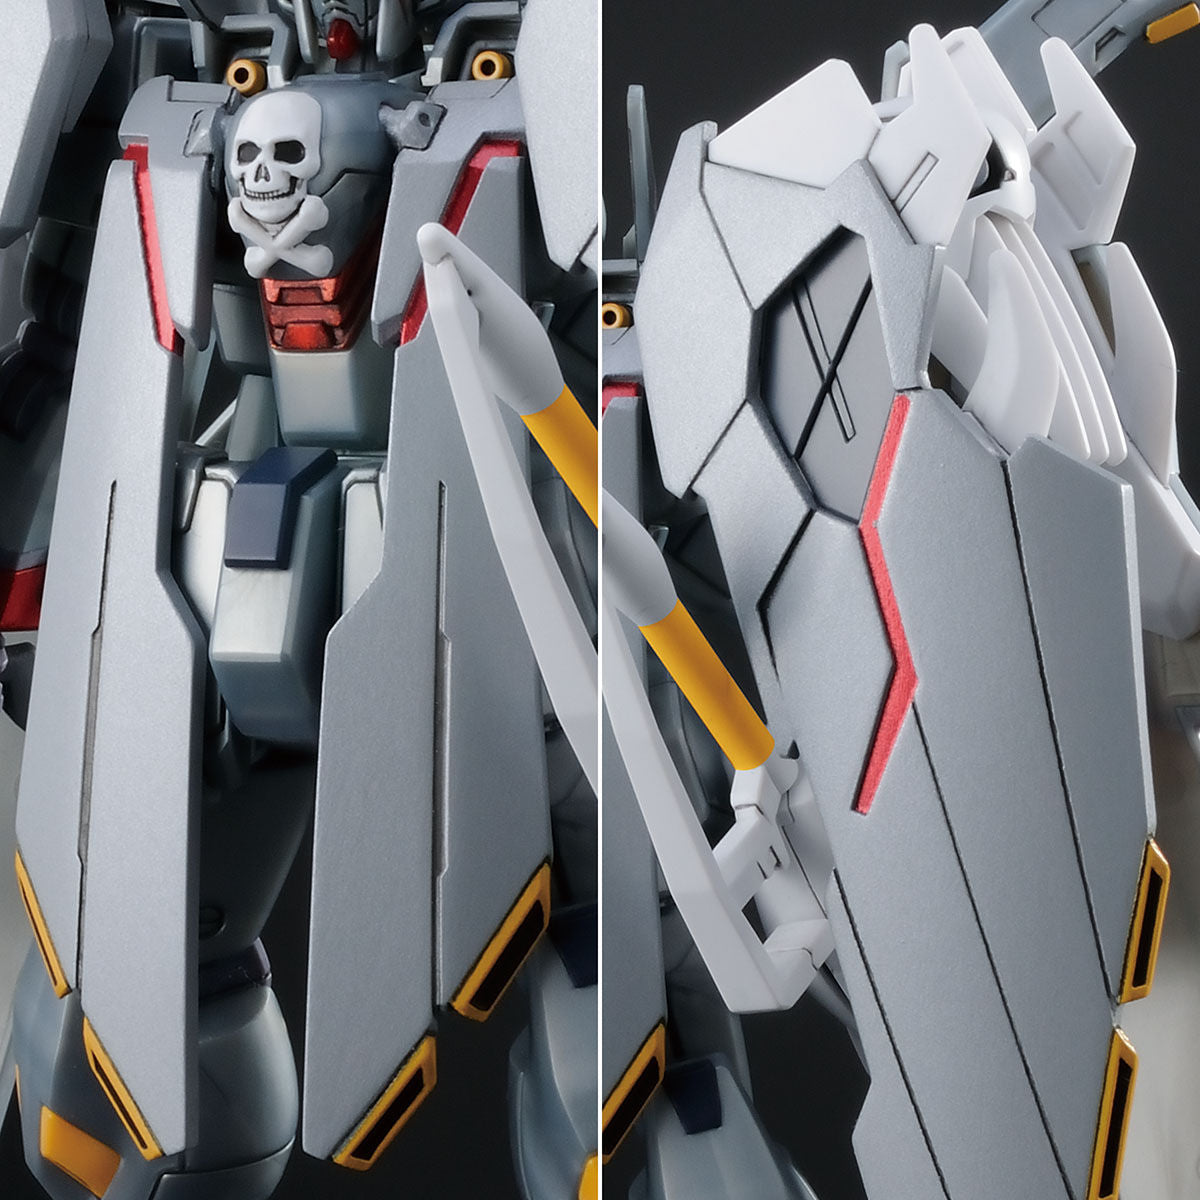 HGUC Crossbone Gundam X-0 Full Cloth P-Bandai